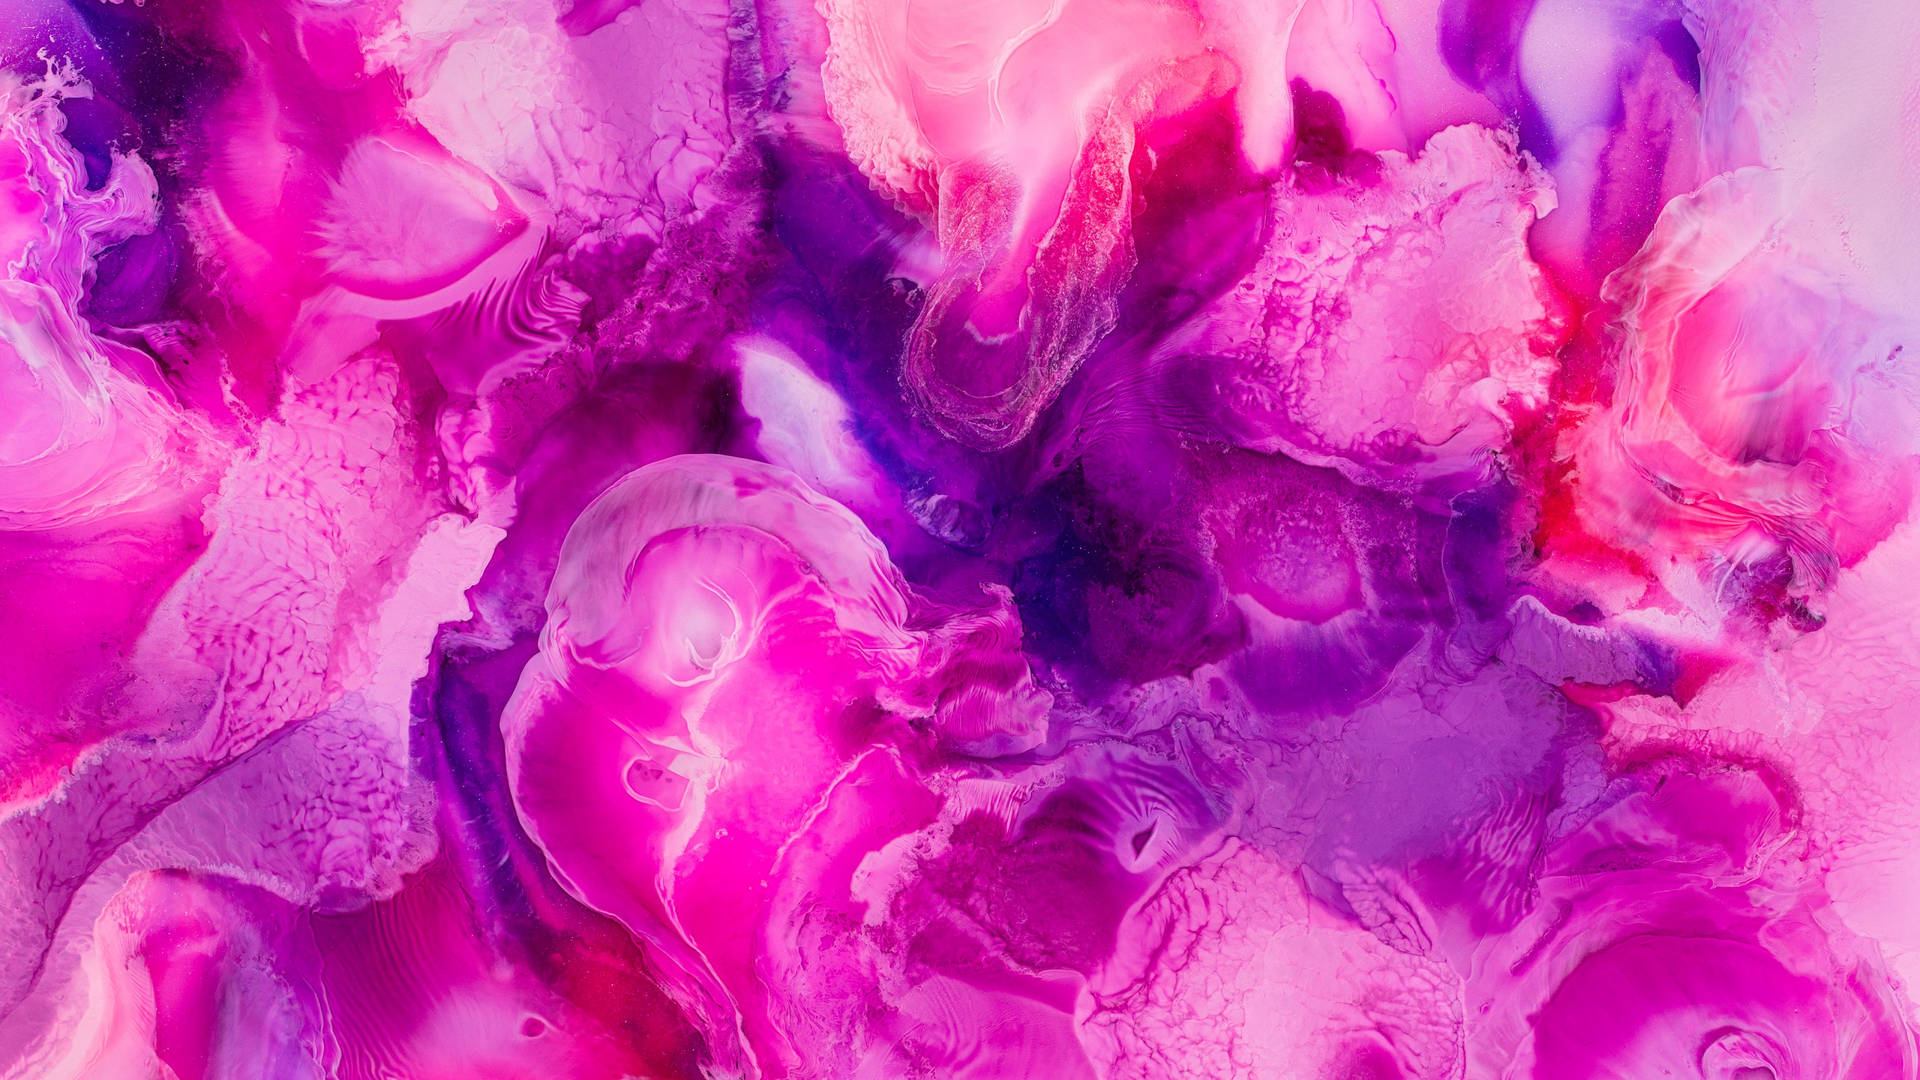 4d Ultra Hd Pink Shade Mixtures Wallpaper